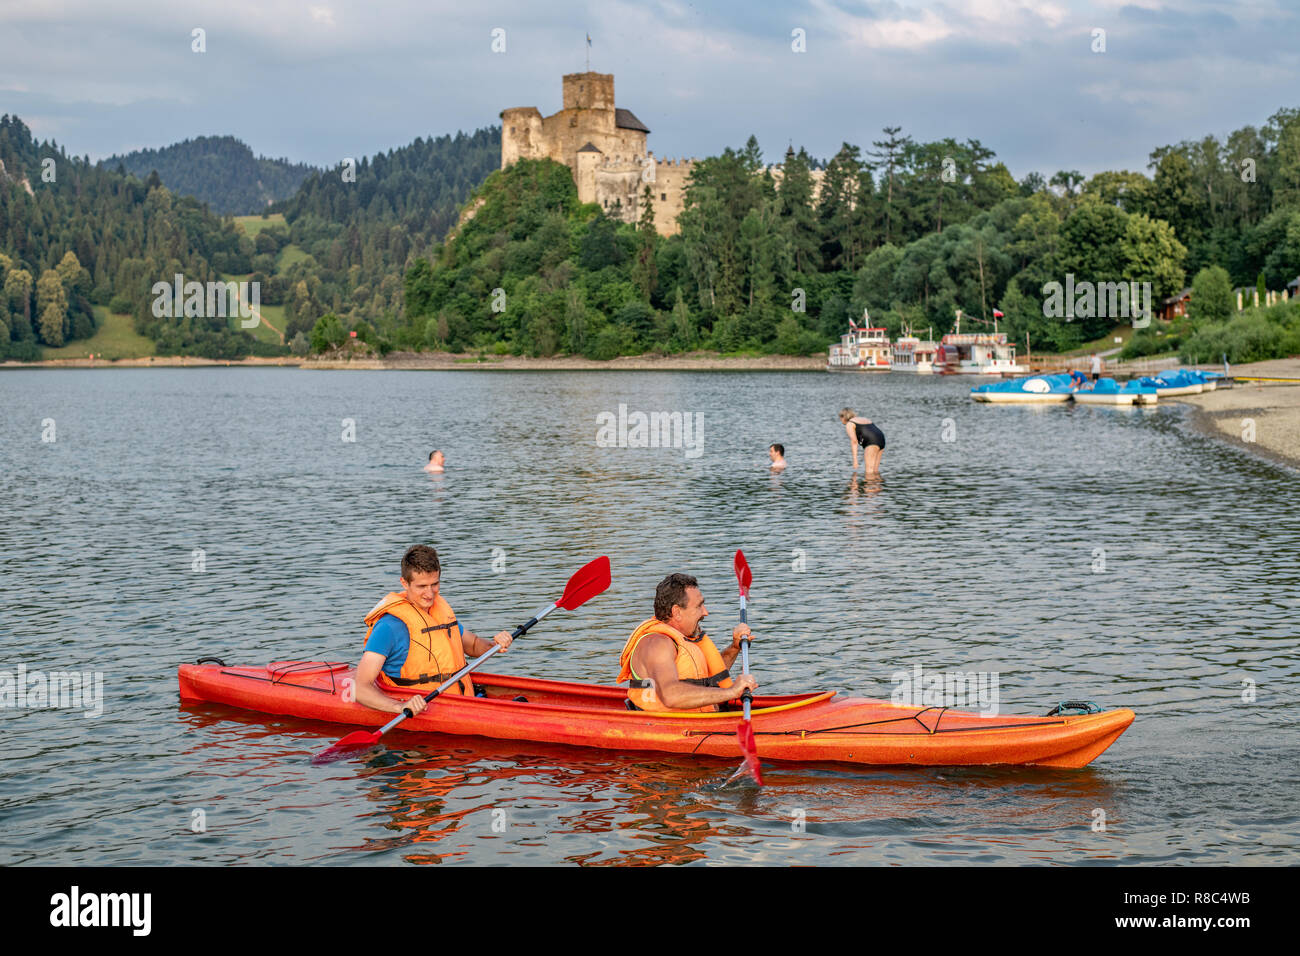 People enjoy Canoeing on lake Czorsztyn in Niedzica, Lesser Poland, Poland. Stock Photo